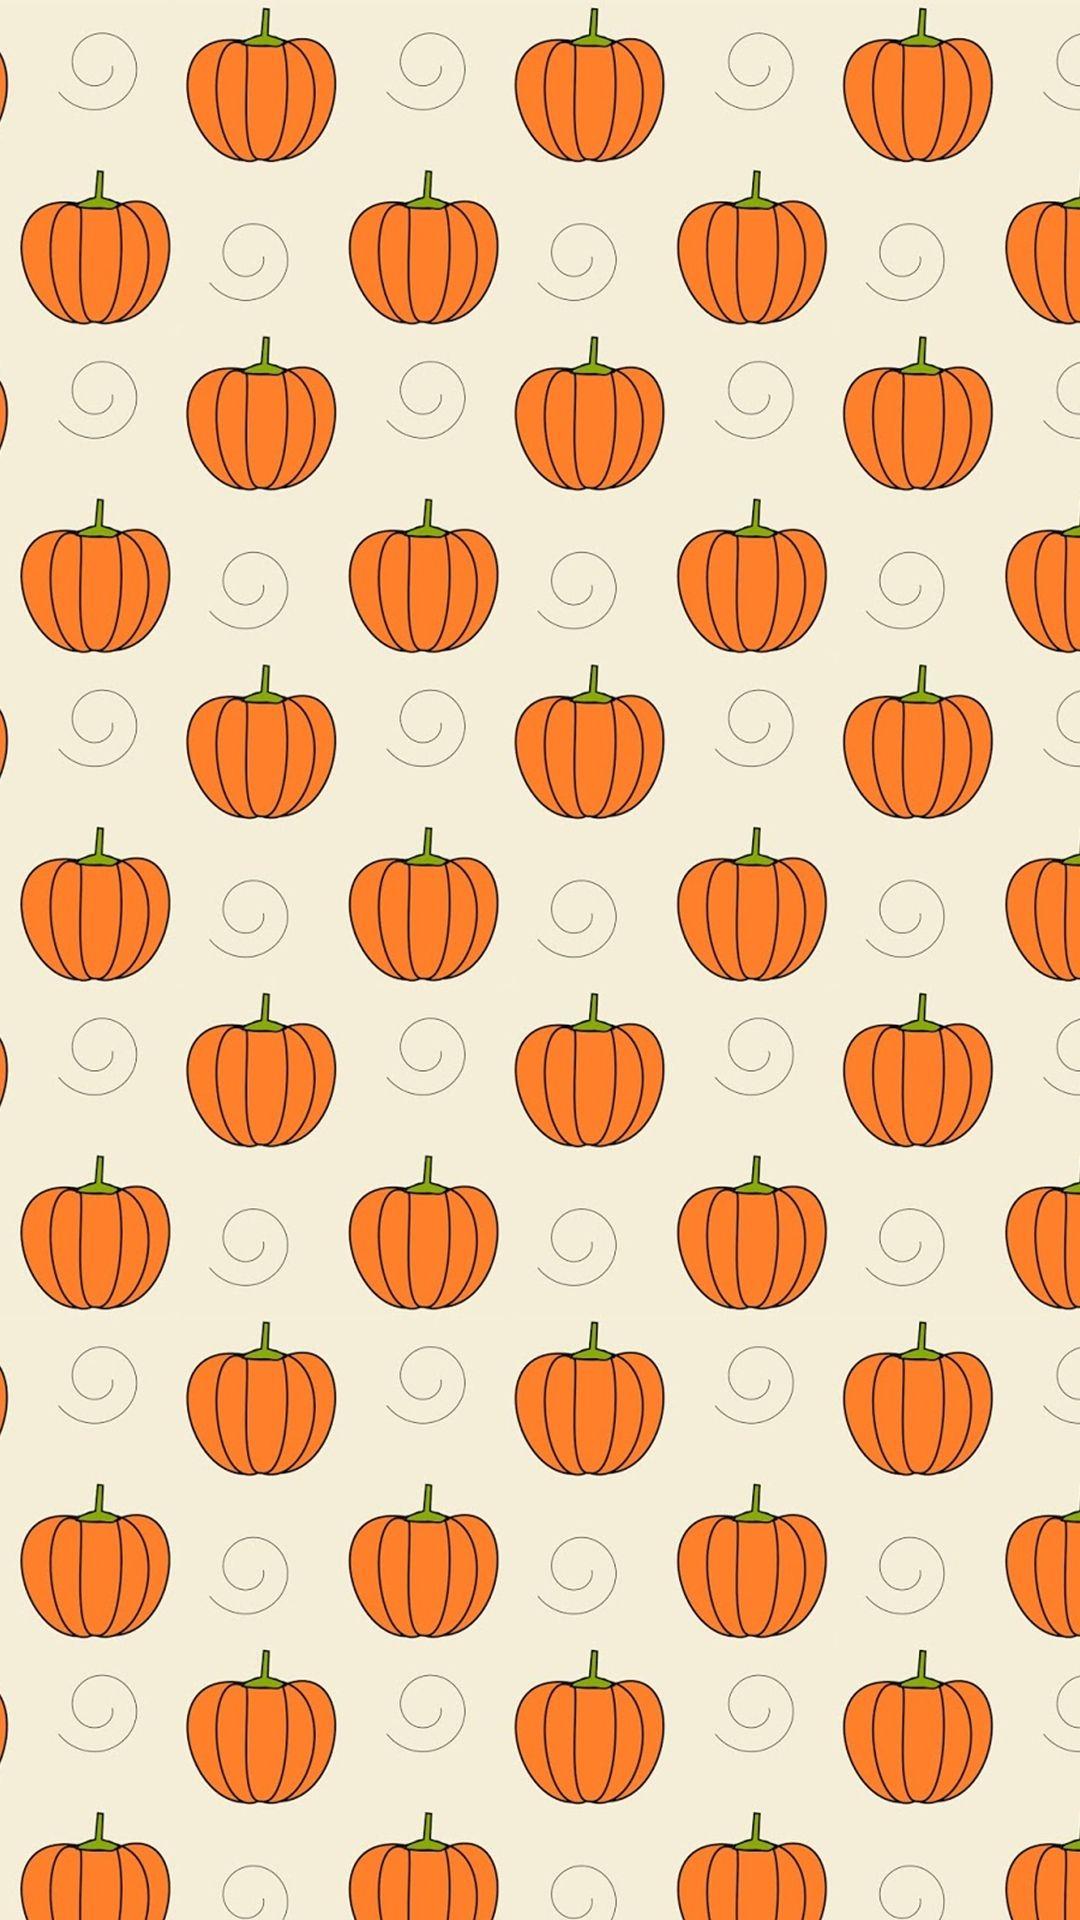 Cute Halloween Pumpkin Wallpapers